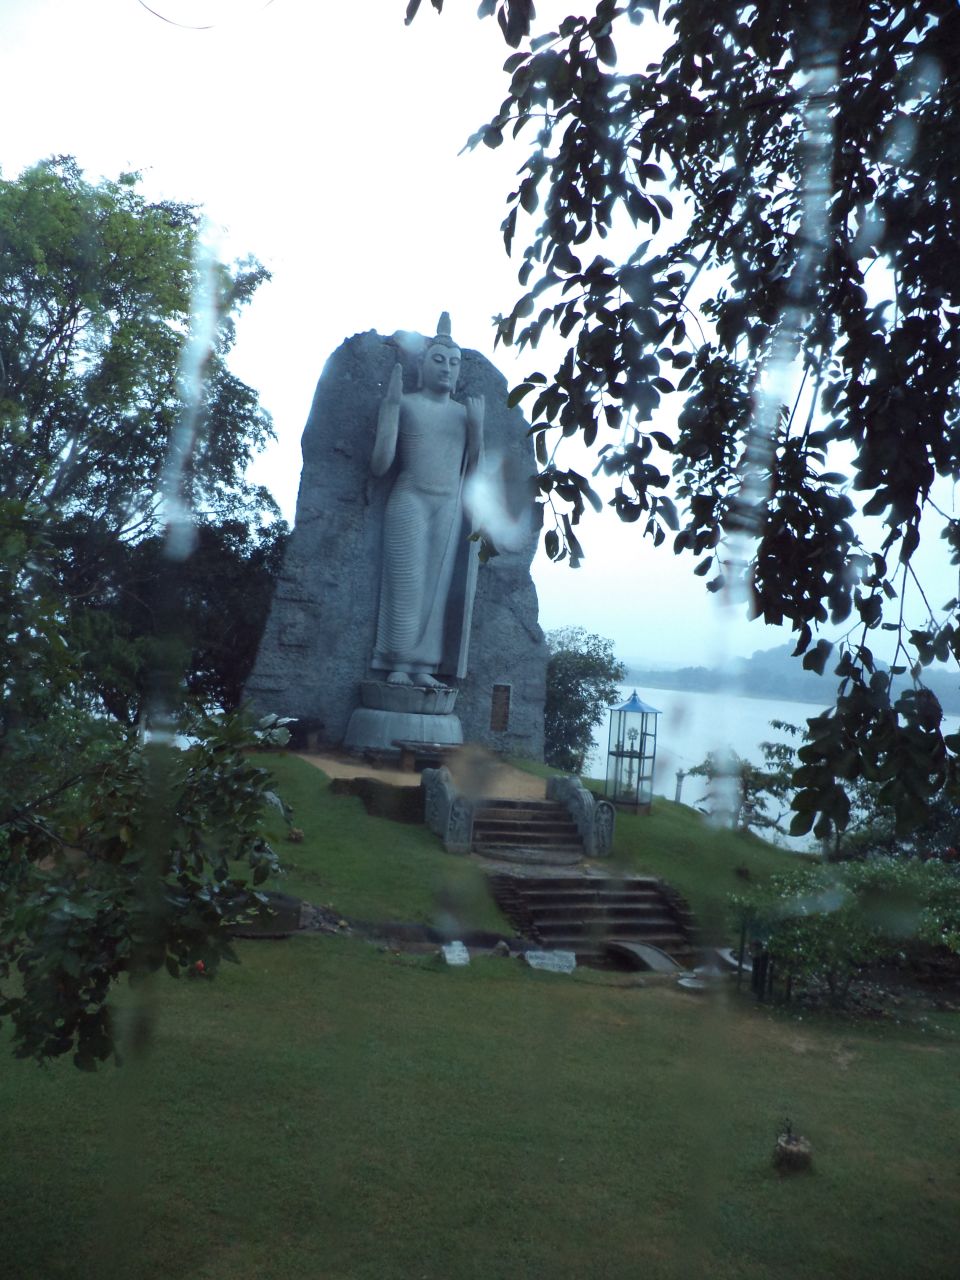 Такой Будда вырезан в целом камне - Шри-Ланка 2017